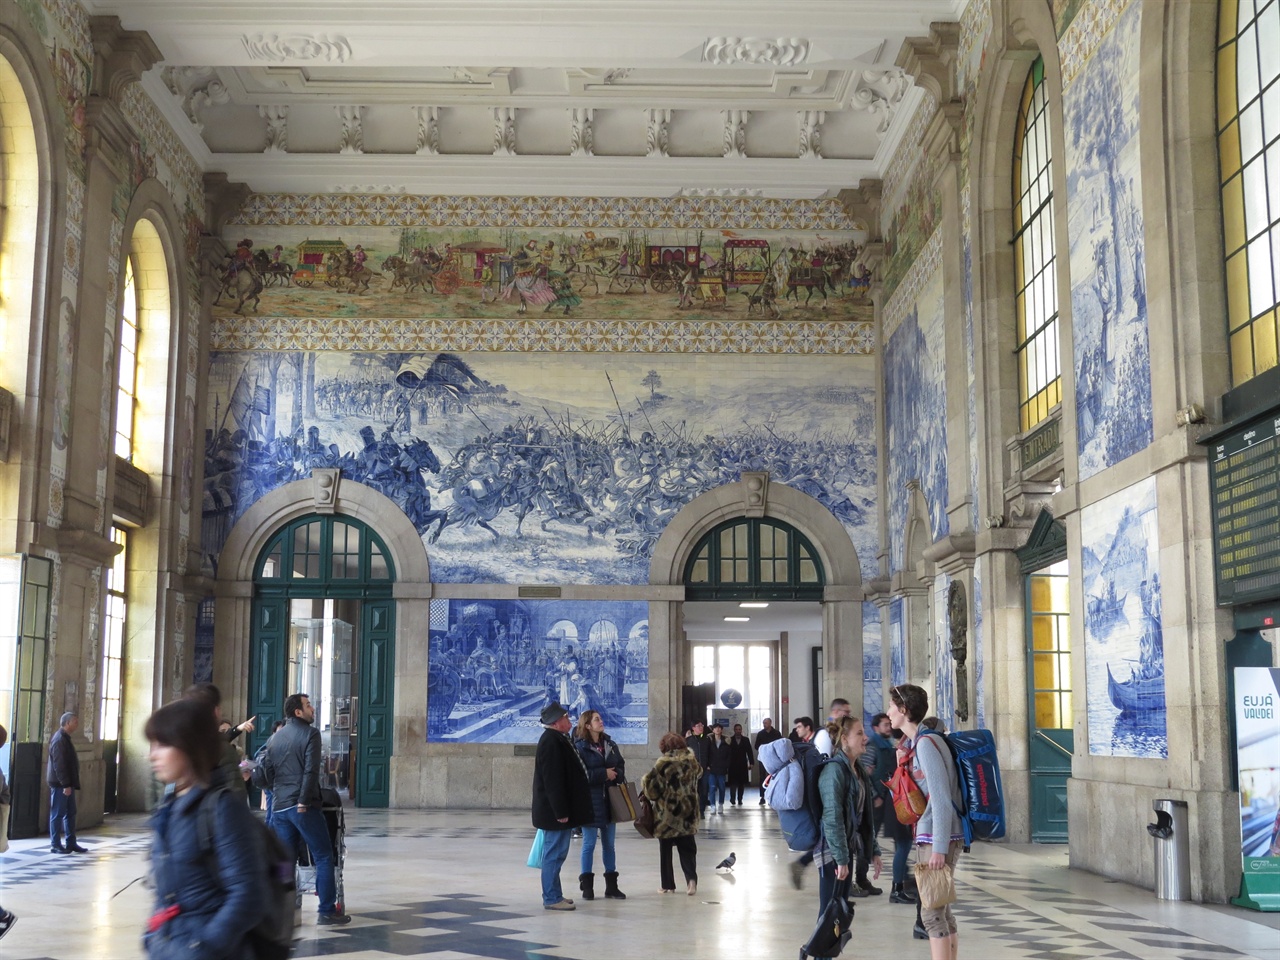 세상에서 가장 아름다운 기차역으로 중의 하나로 소문난 포르투 상벤투 역 안의 아슐레흐 장식